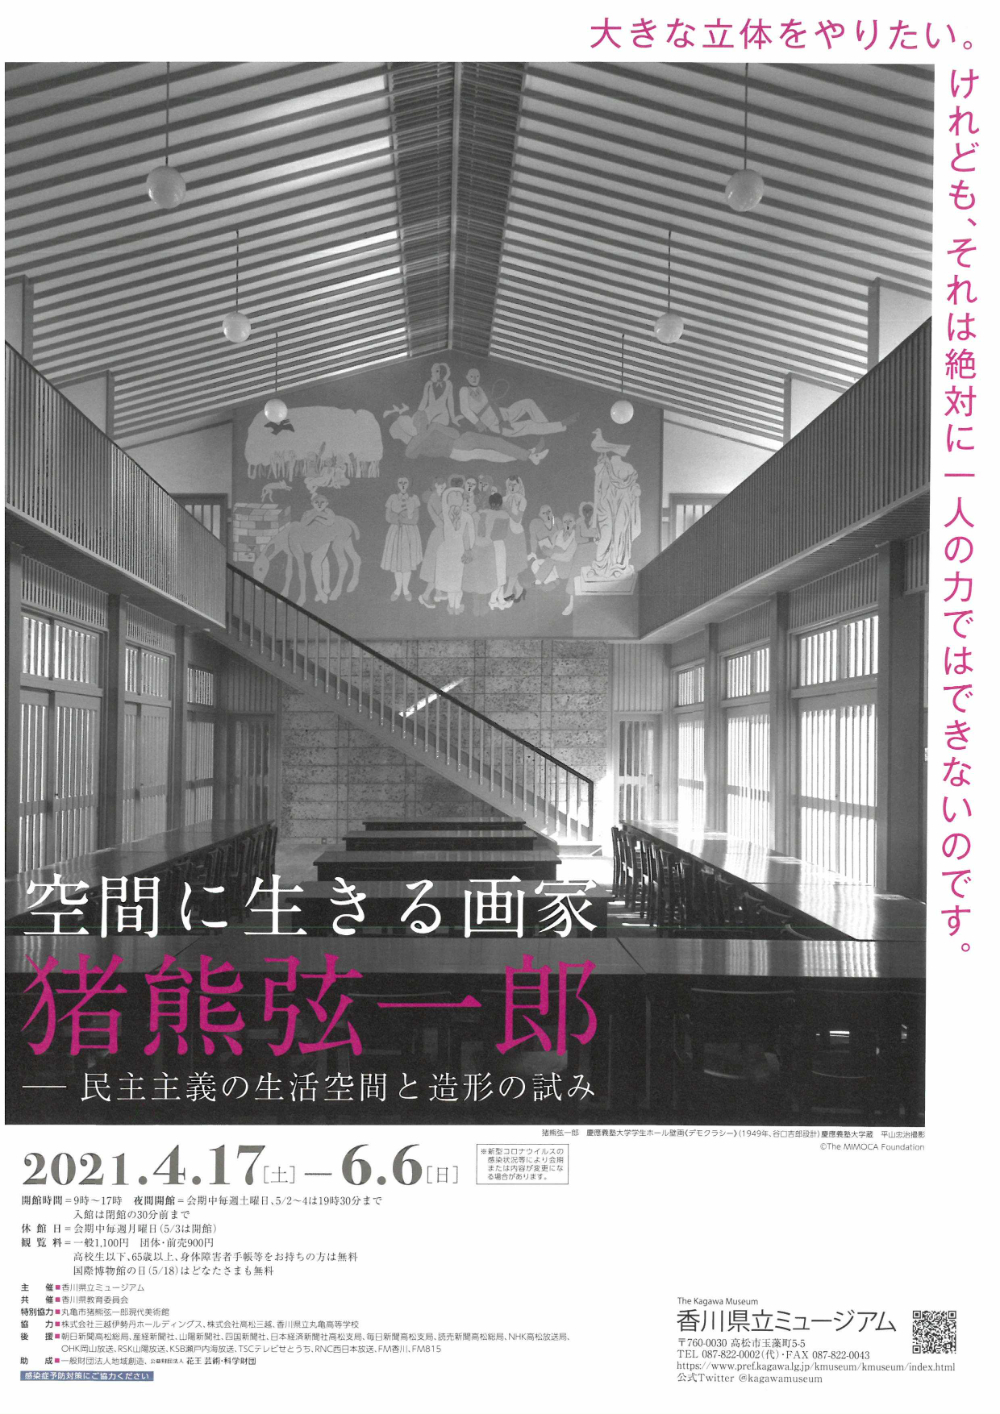 12张日本美术展展览海报